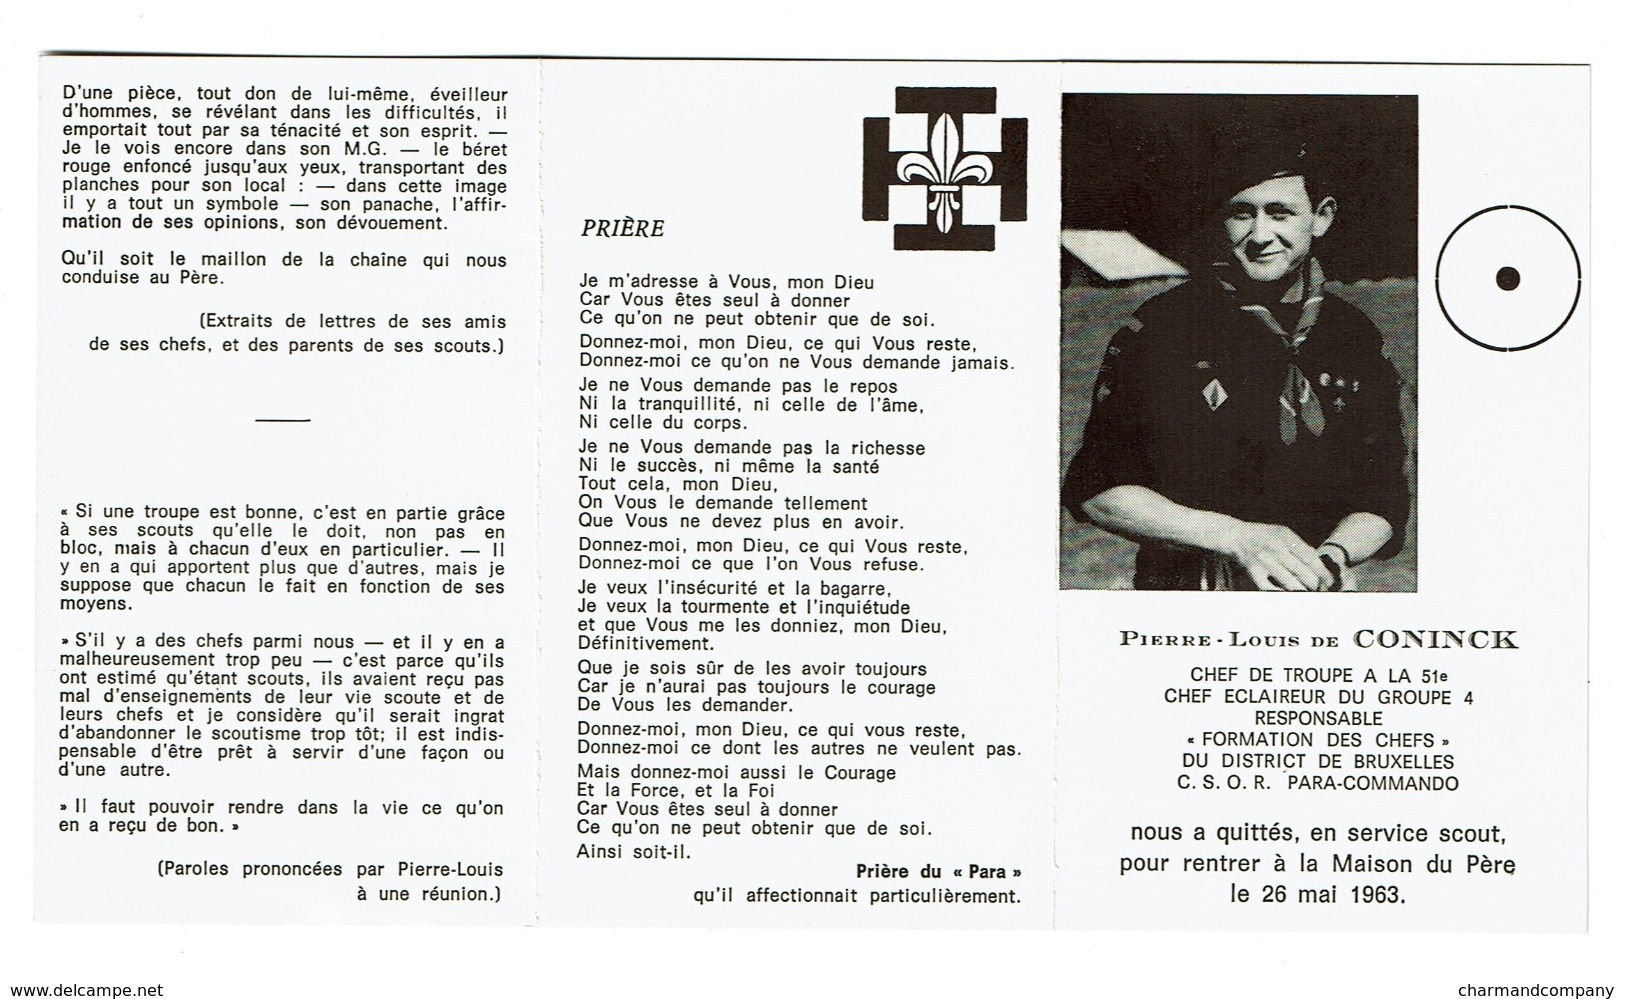 Souvenir Pieux - Pierre-Louis De CONINCK - Chef De Troupe à La 51è - C.S.O.R. Para-Commando / 1963 - Scoutisme - Scouting